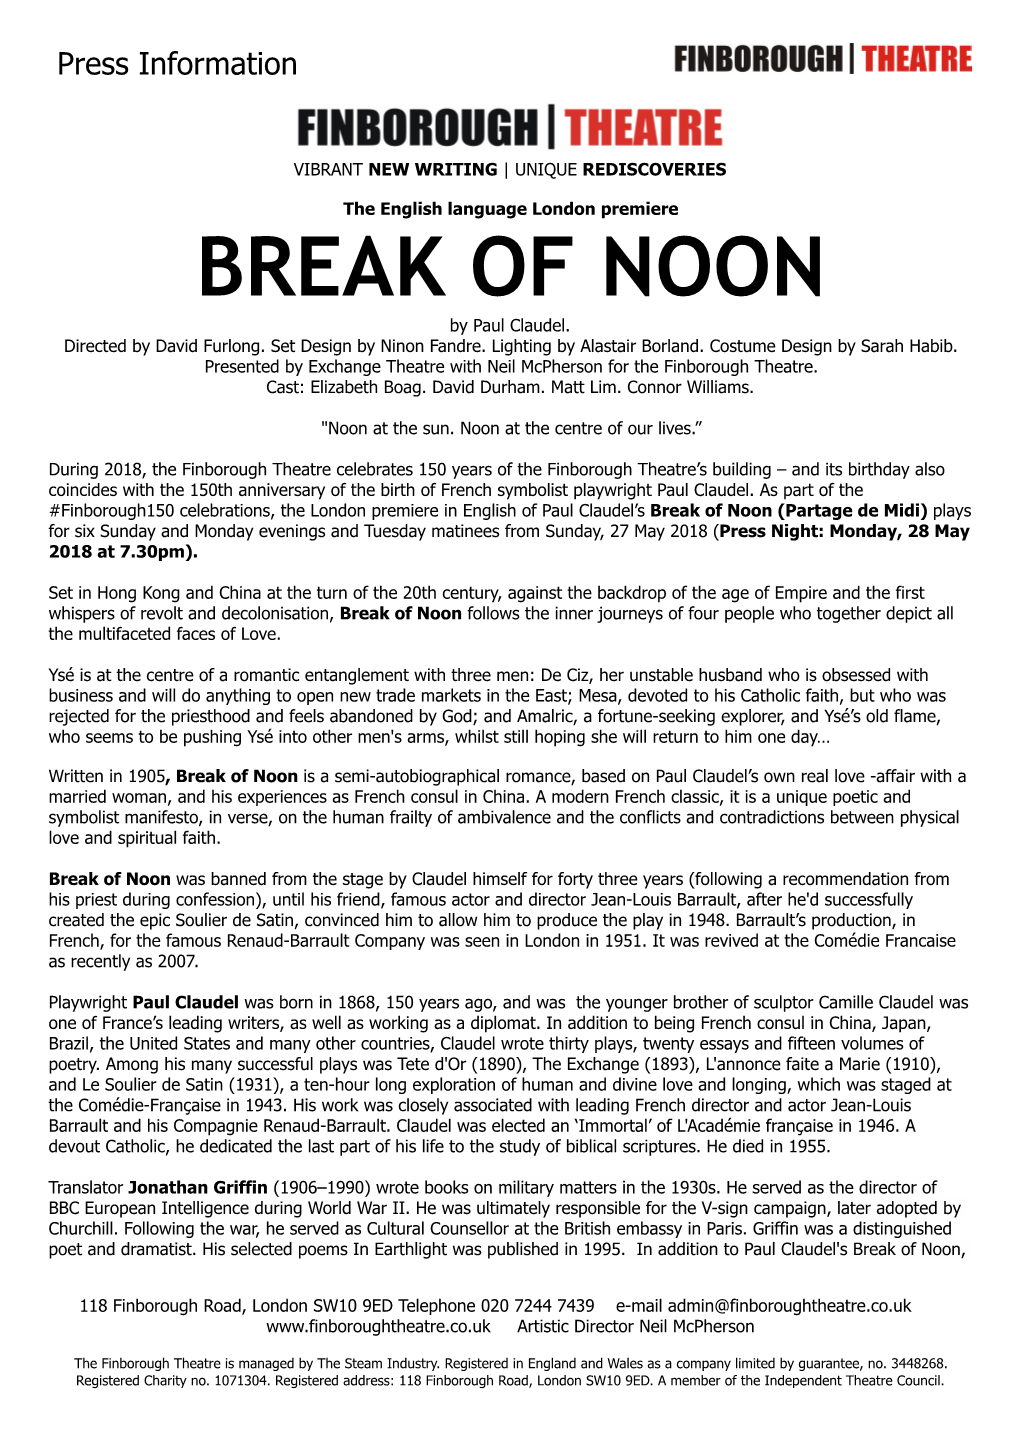 BREAK of NOON by Paul Claudel